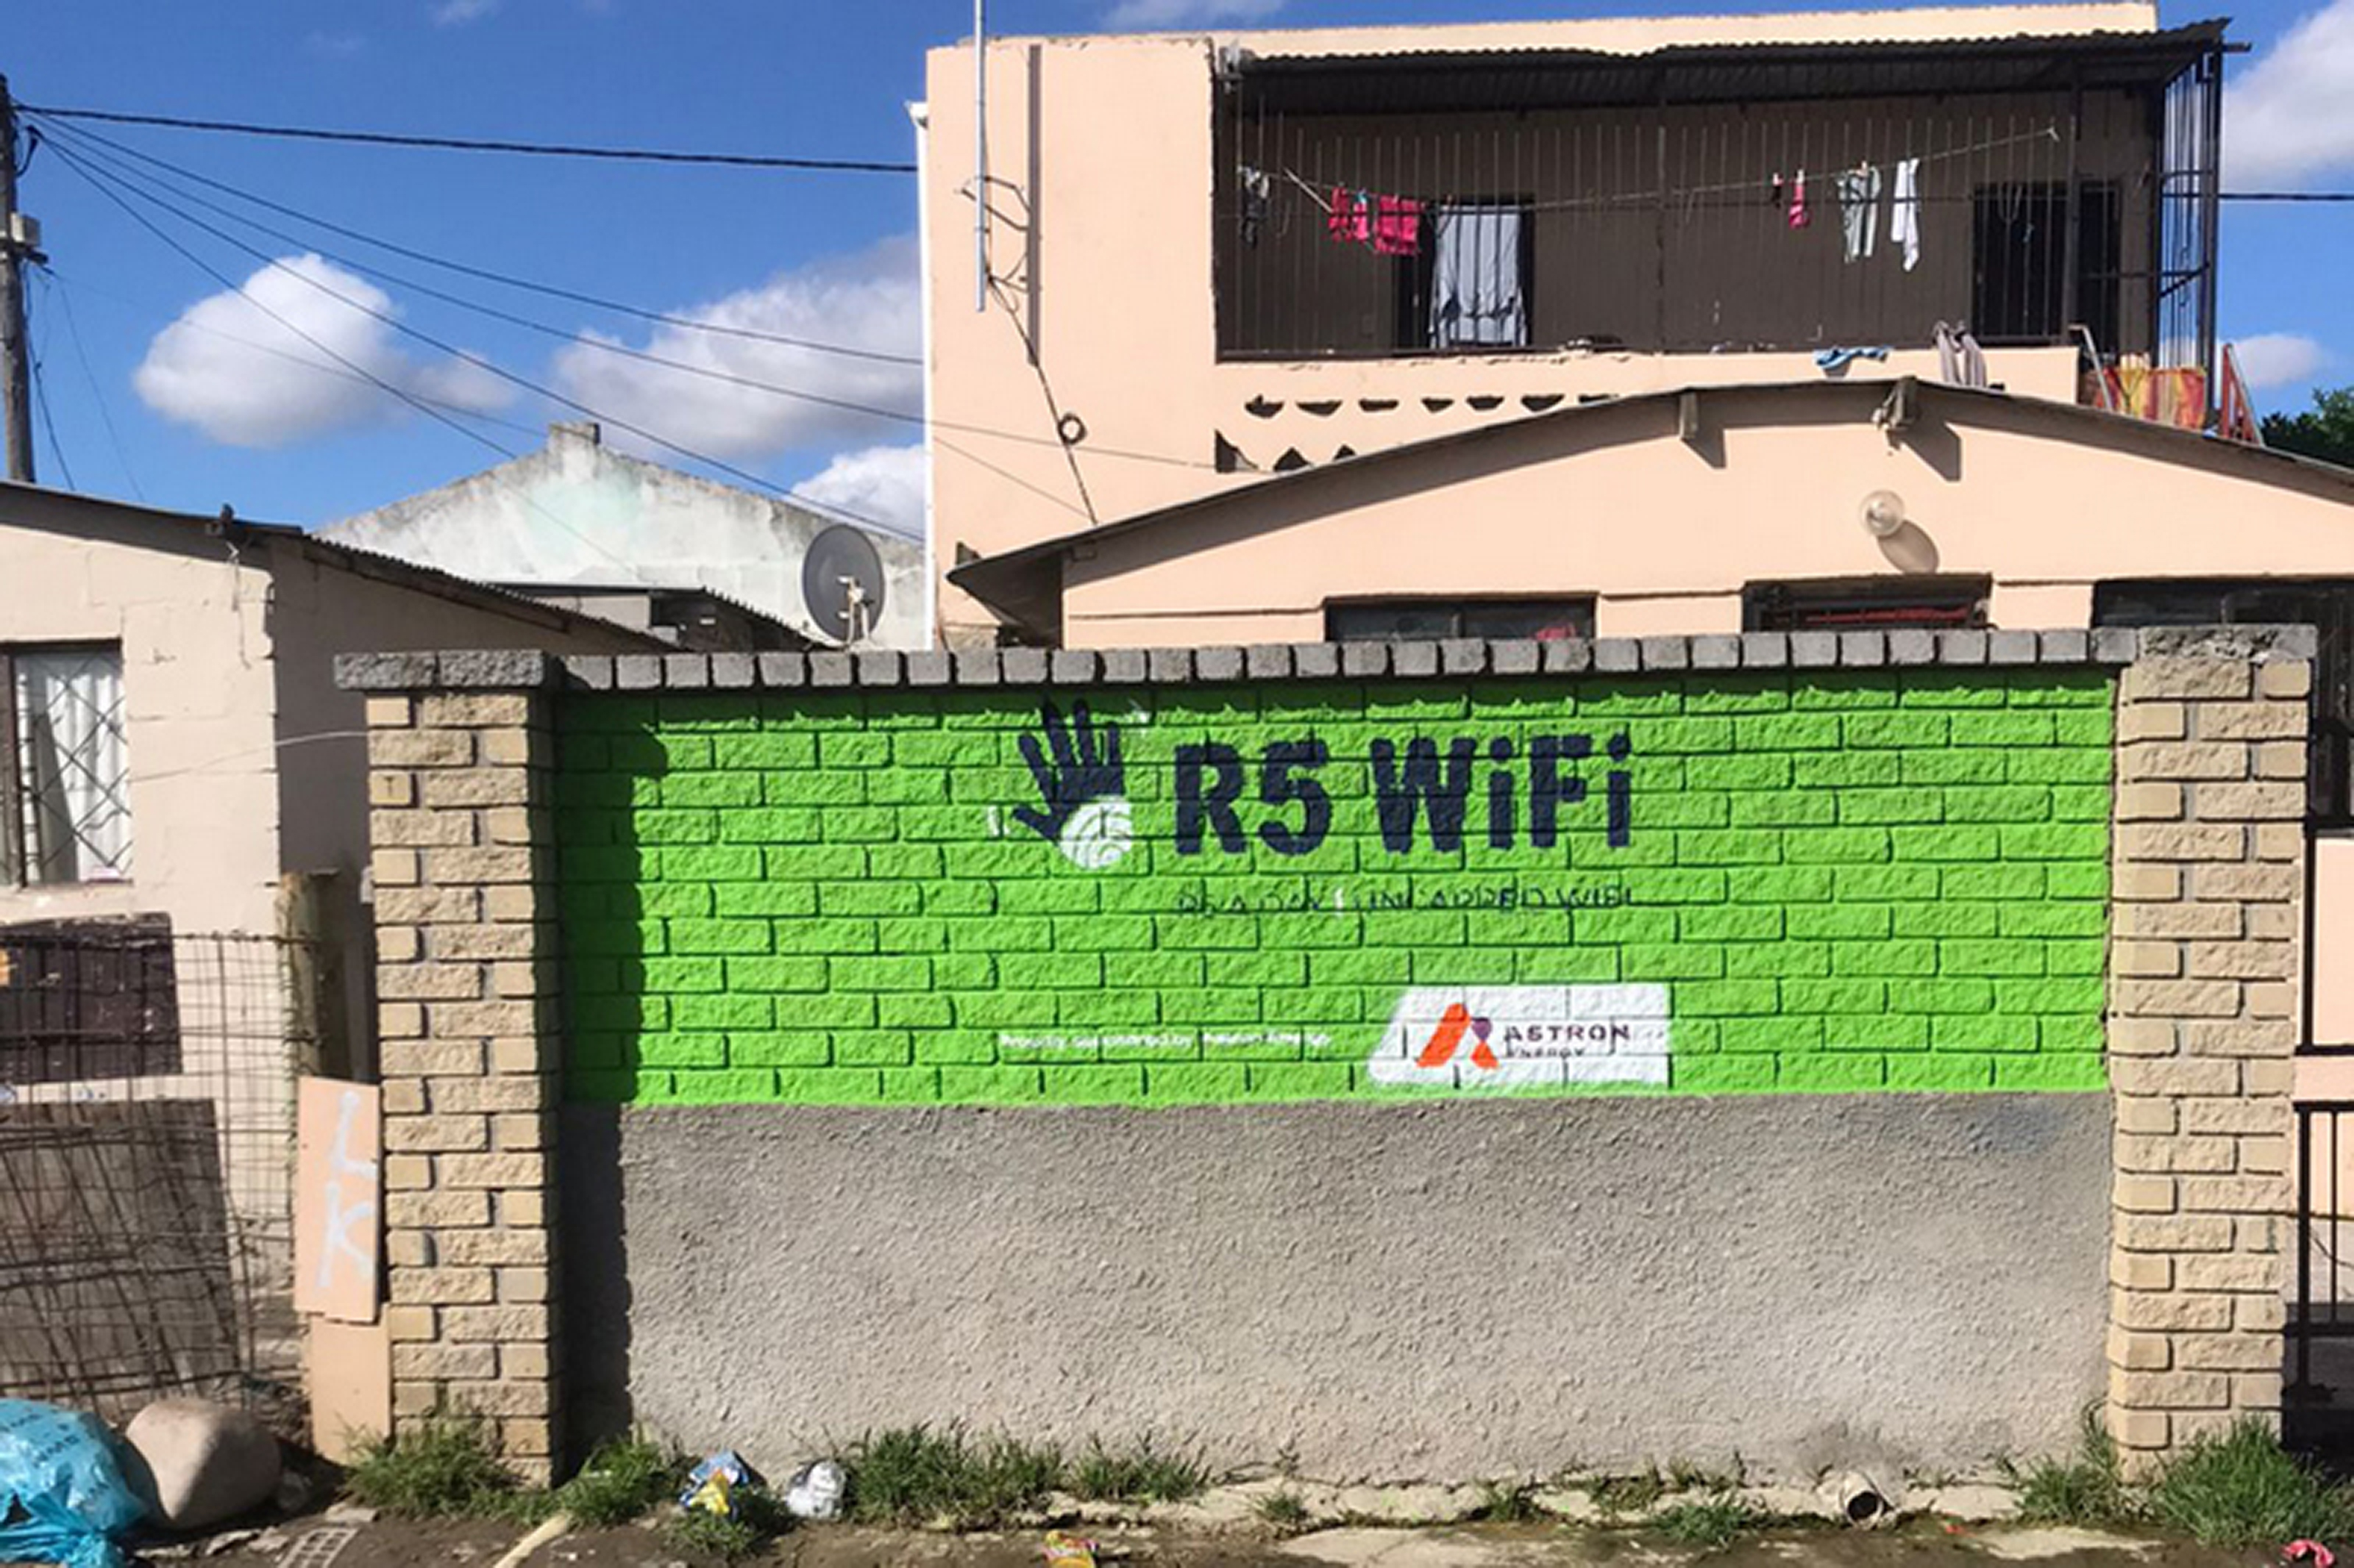 R5 WiFi - Astron Energy